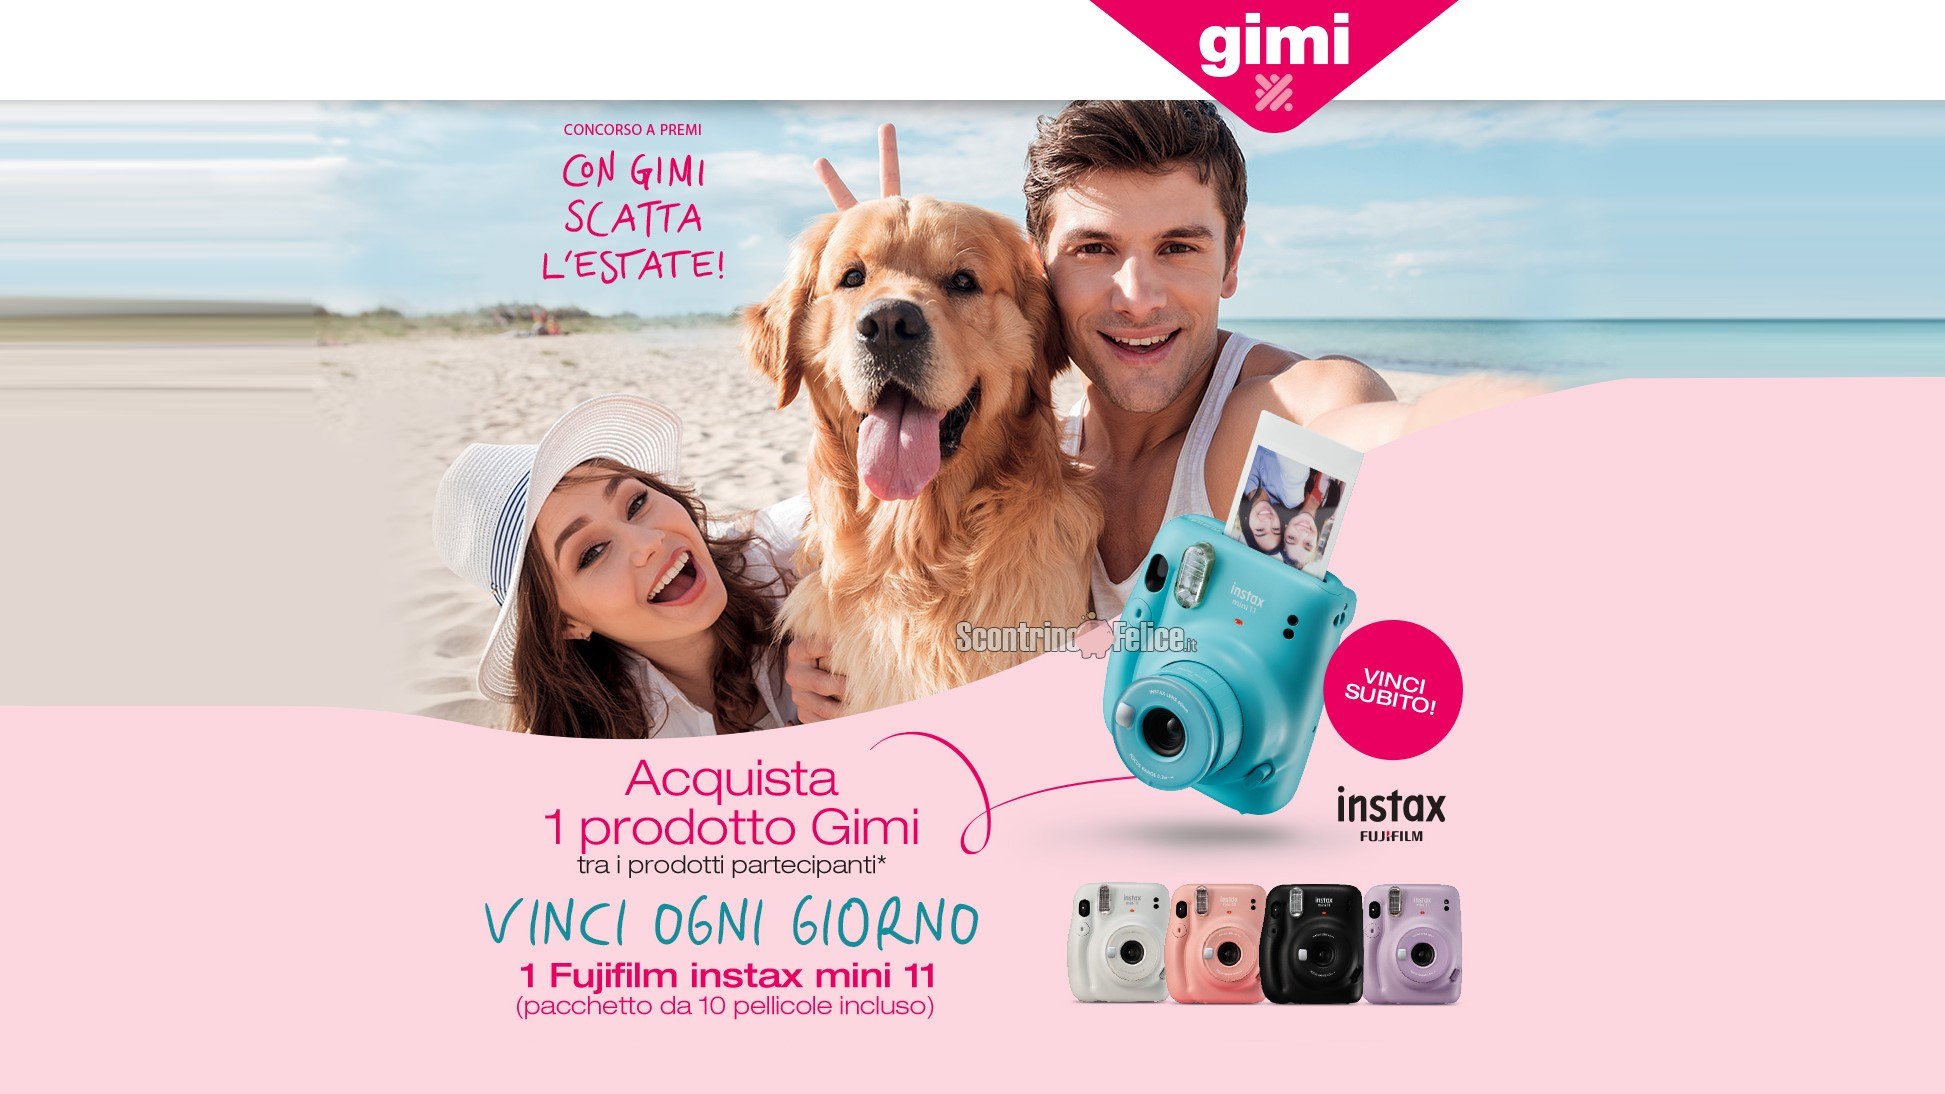 Concorso “Con Gimi Scatta L’Estate!”: in palio ogni giorno 1 fotocamera Fujifilm Instax Mini 11 del colore che preferisci!